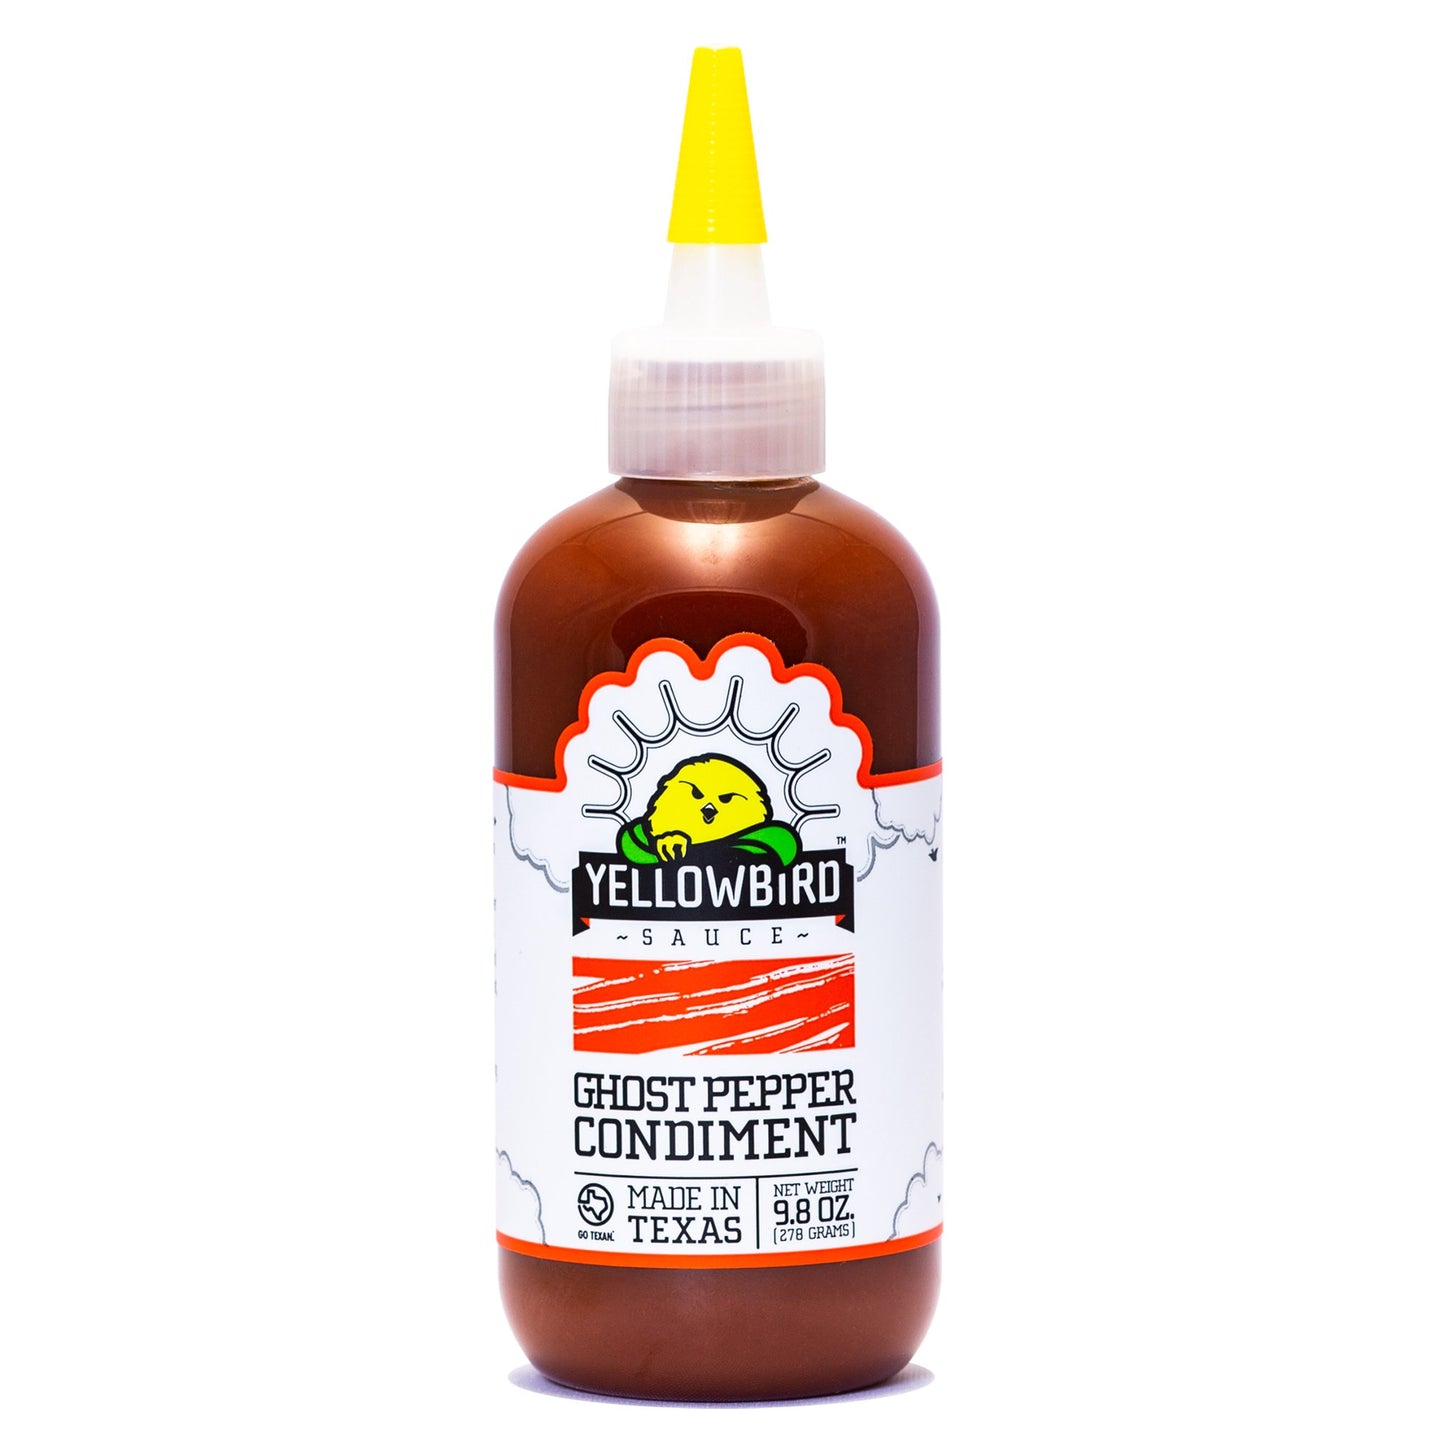 Yellowbird Sauce Ghost Pepper Condiment , 9.8 oz